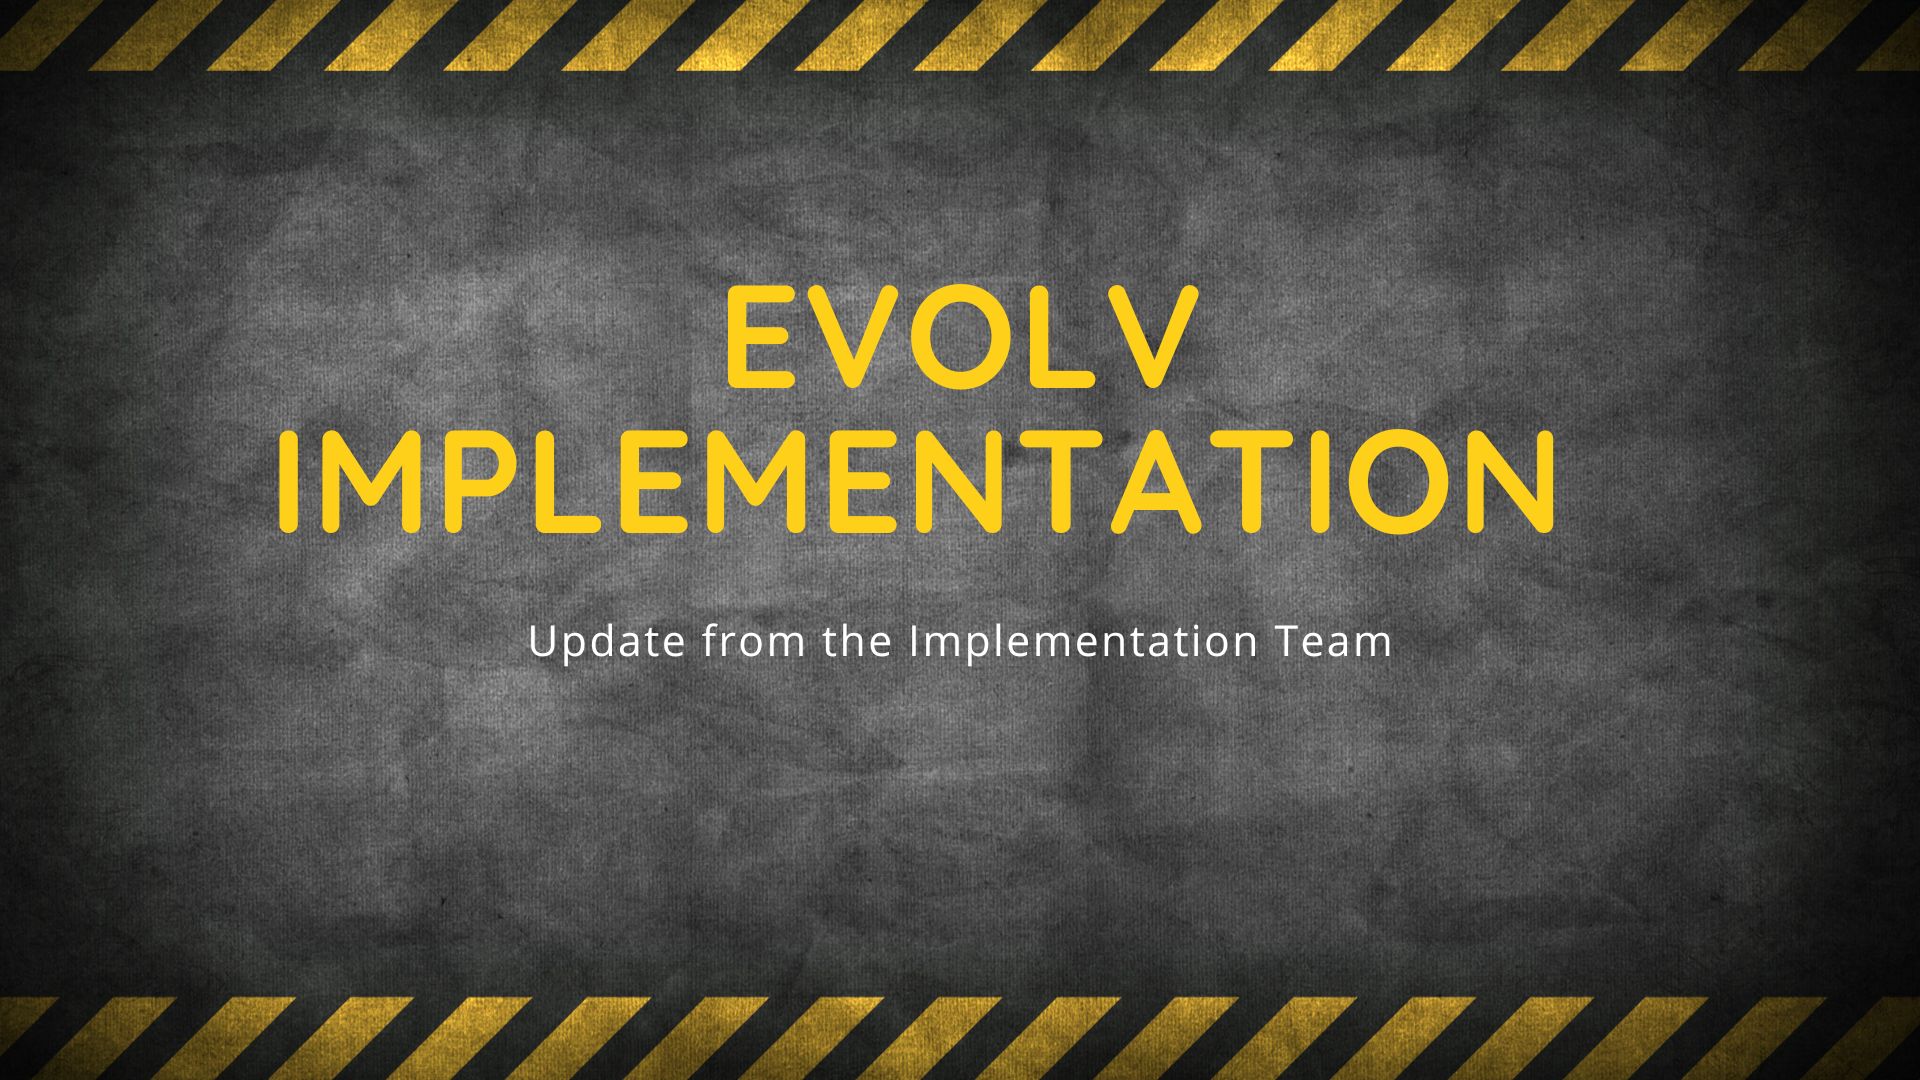 Evolv-Implementation-Team-Update-Presentation image